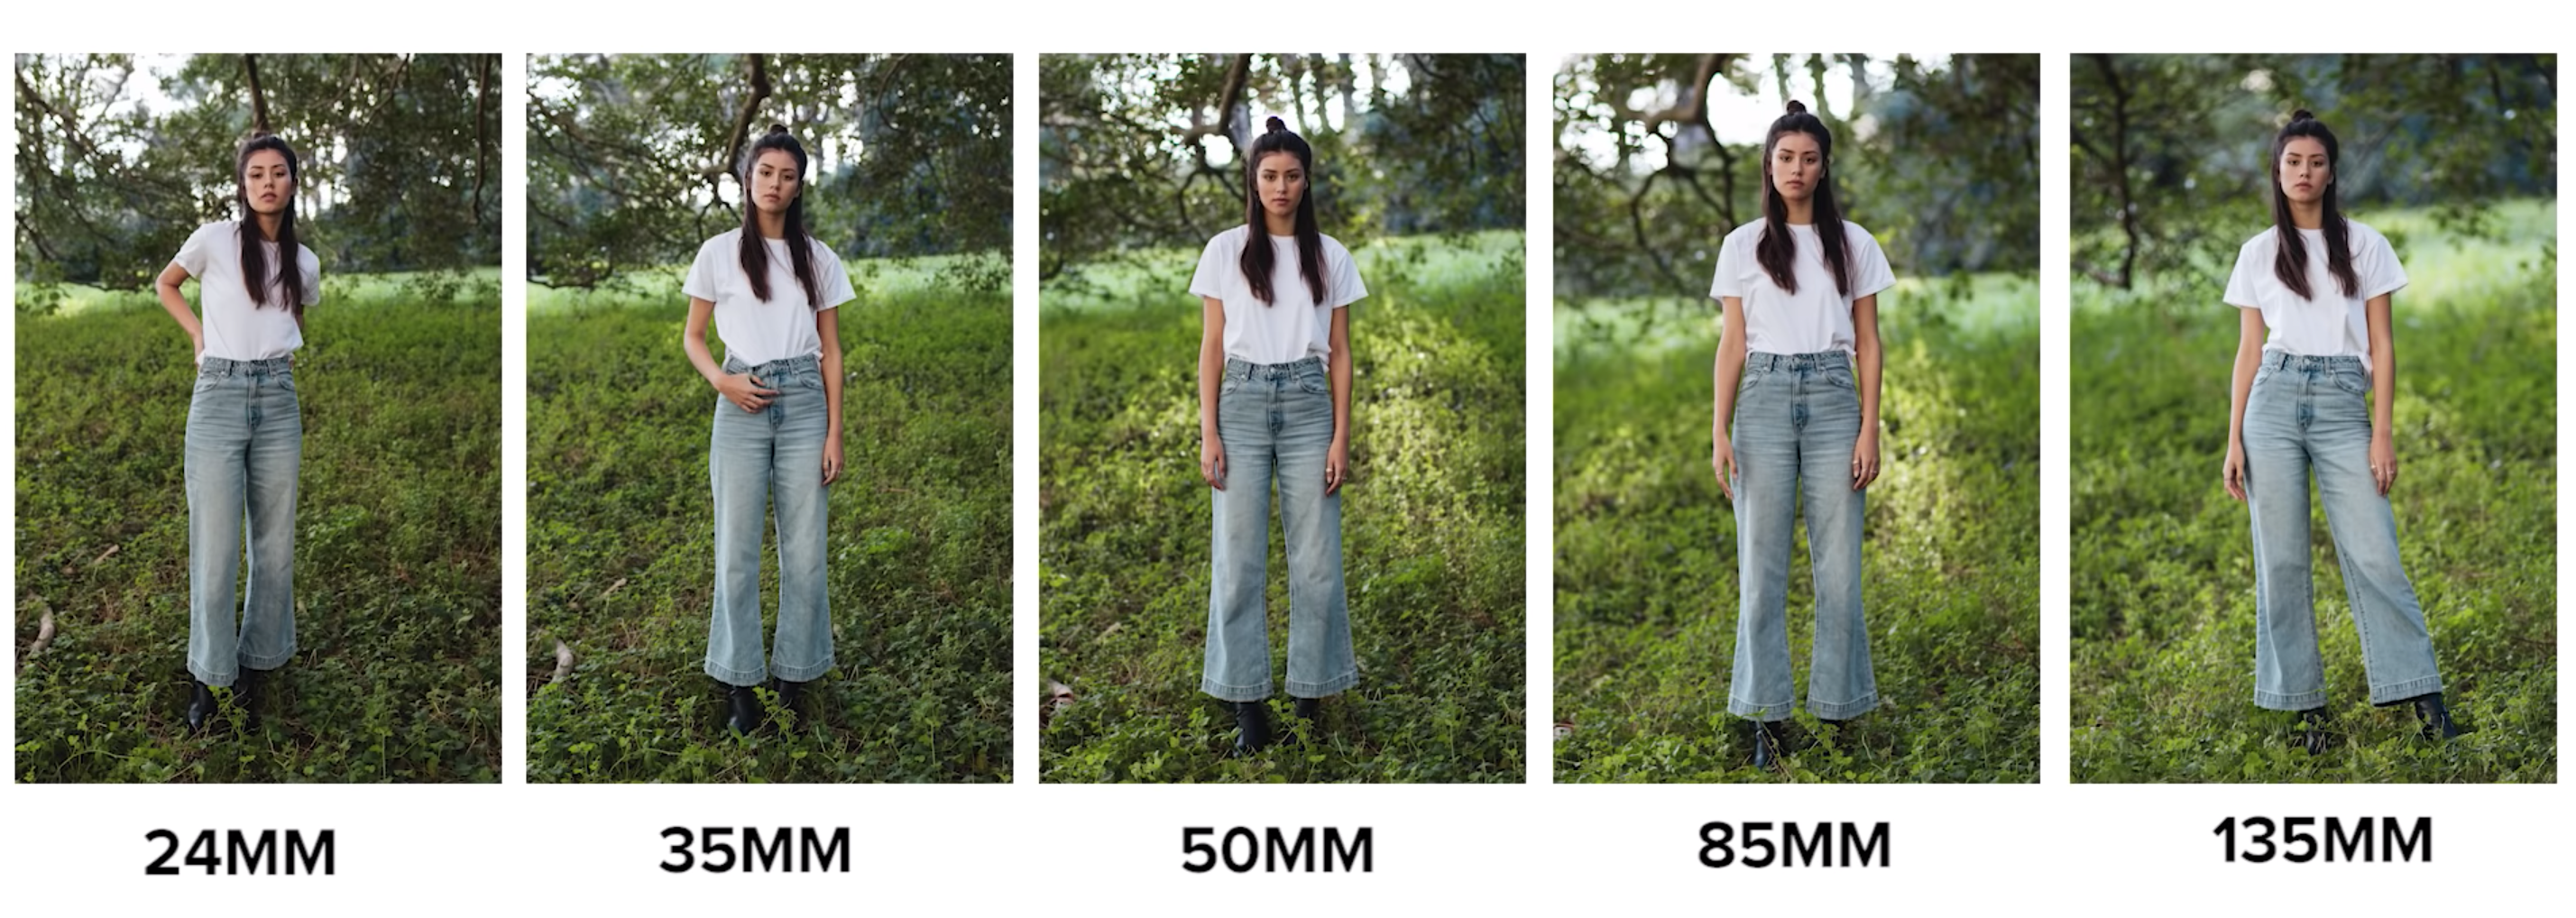 Как определить рост человека по фото приложение